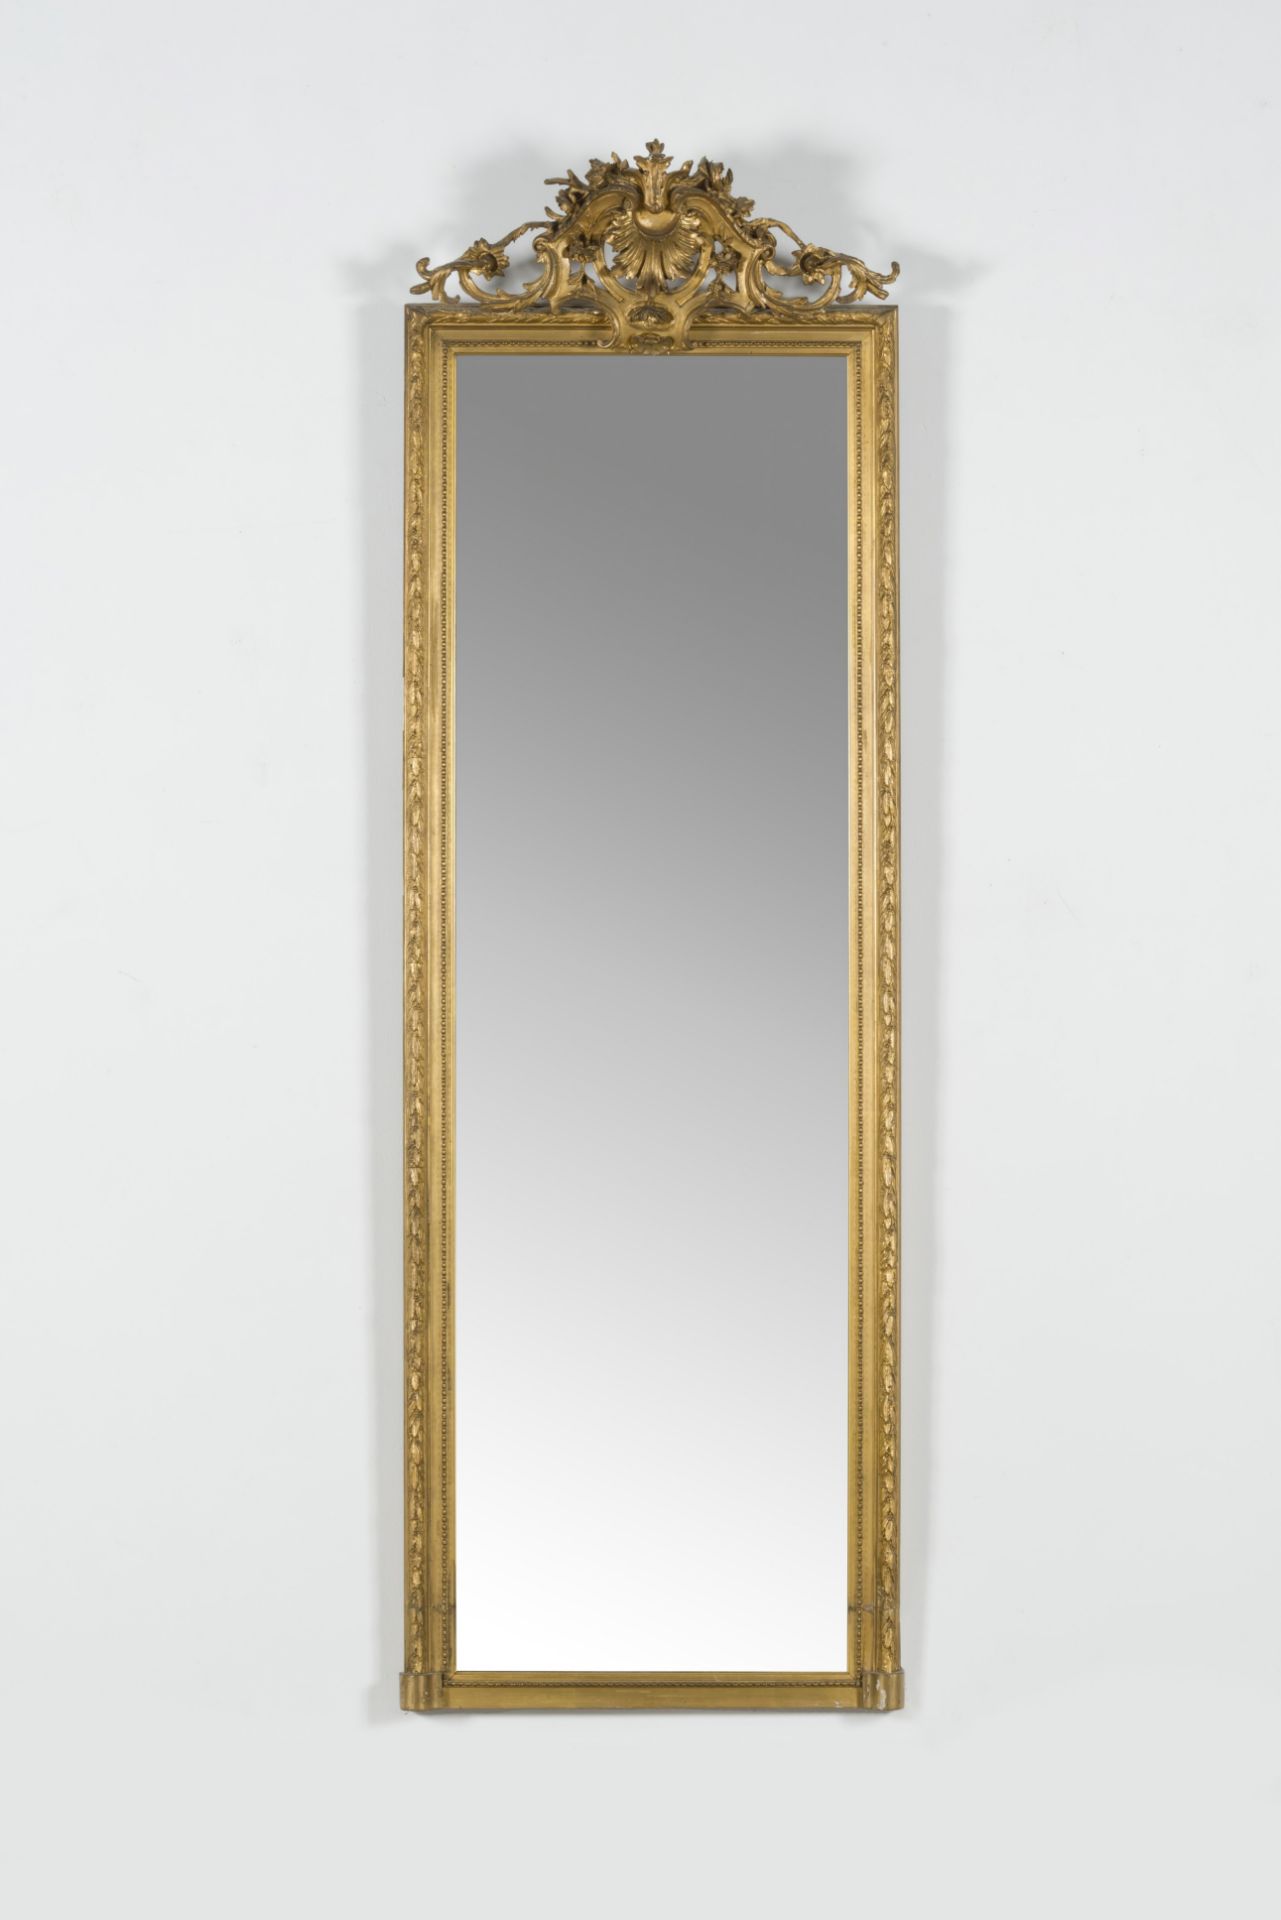 Suite de deux miroirs en bois dor&#233;. 19e si&#232;cle - Image 2 of 2